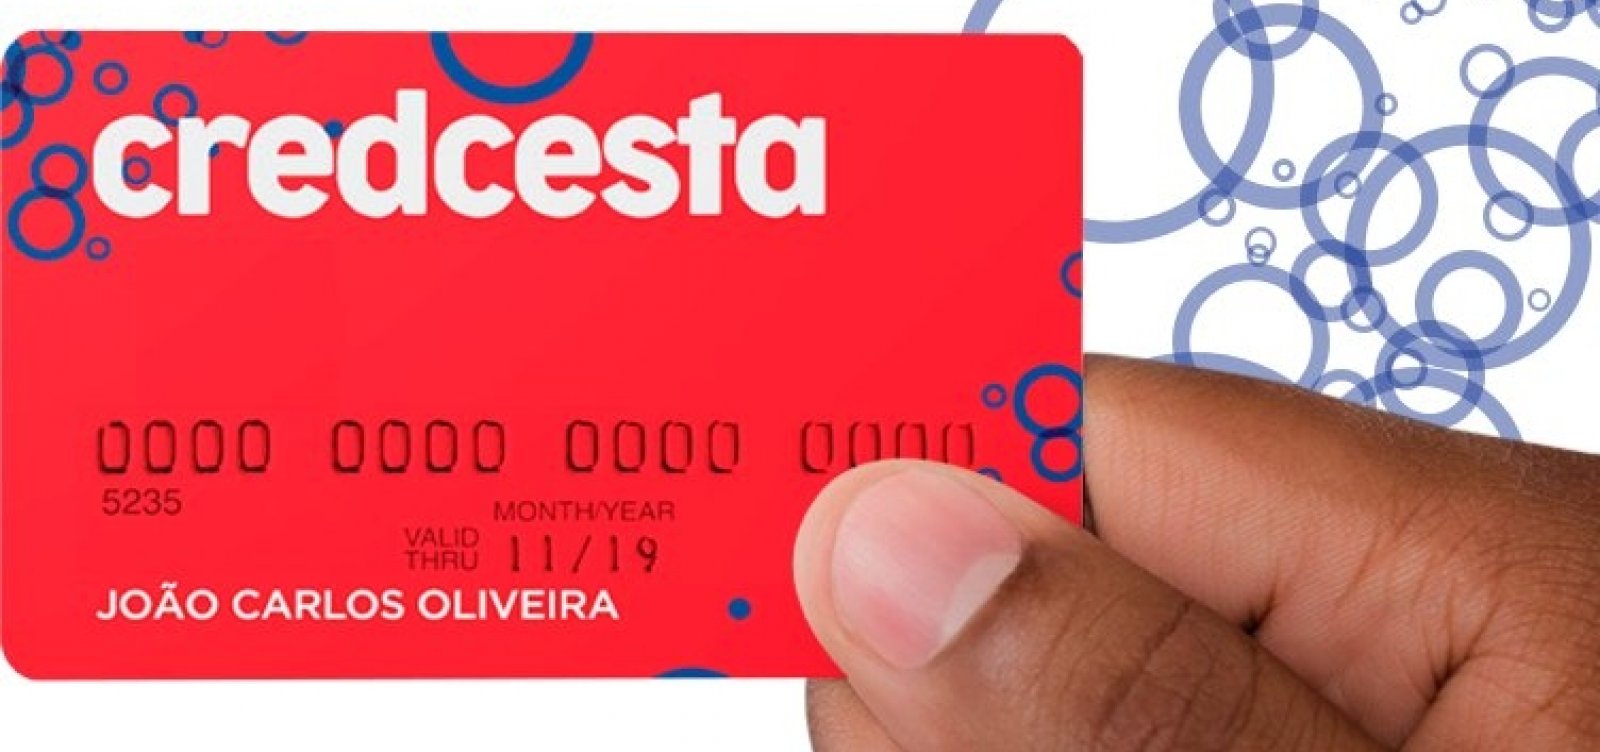 Bahia e Vitória fecham patrocínio com cartão Credcesta